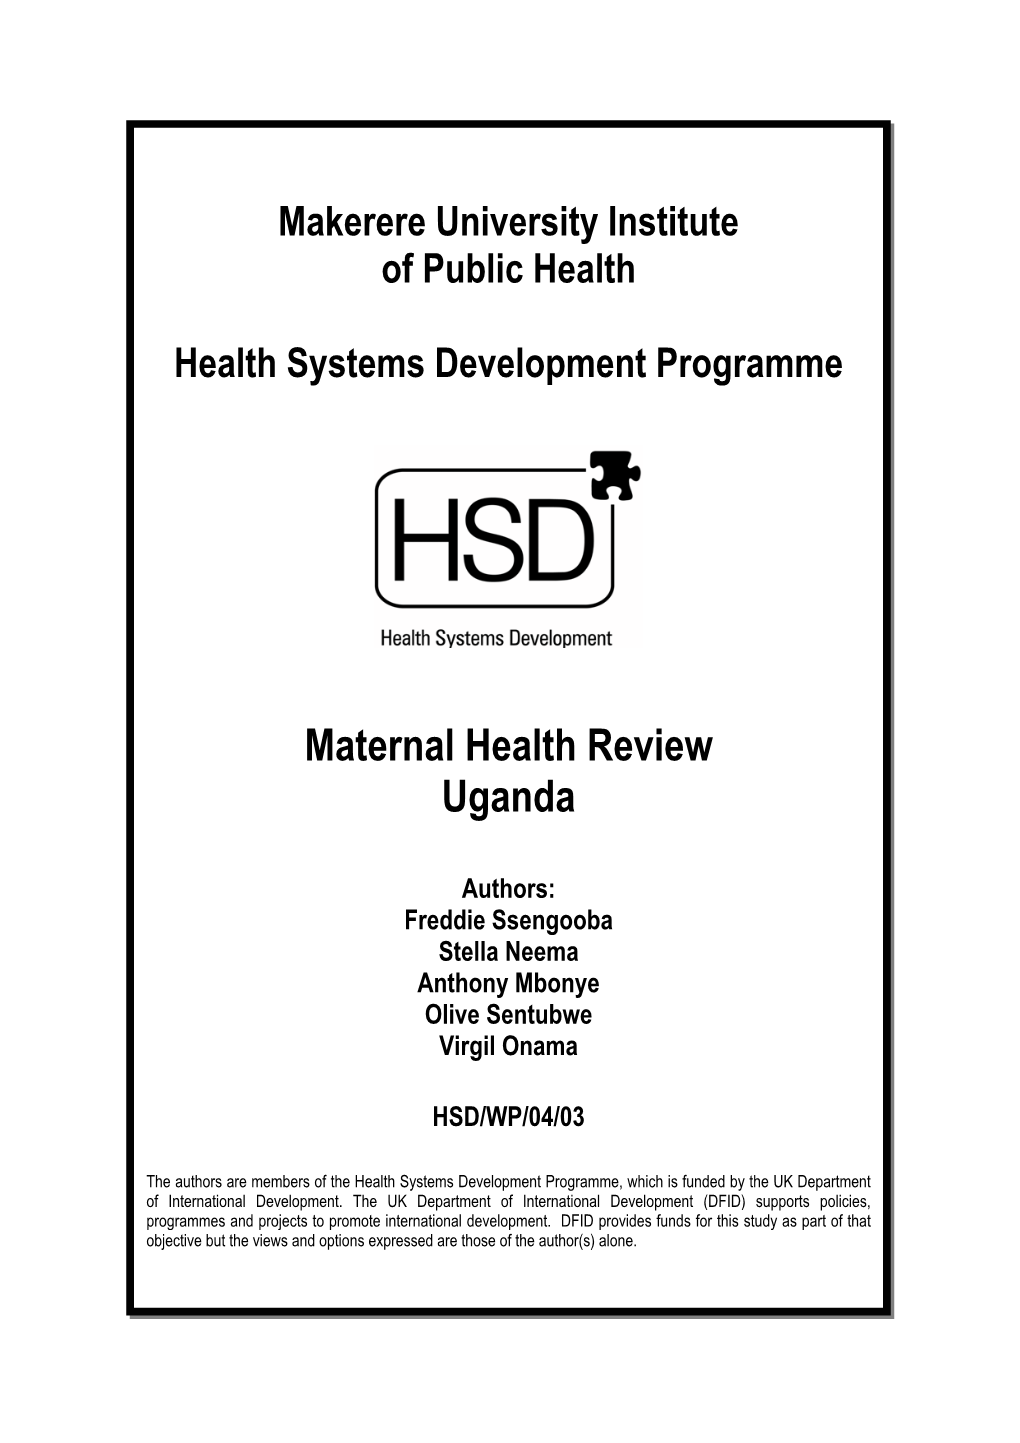 Maternal Health Review Uganda